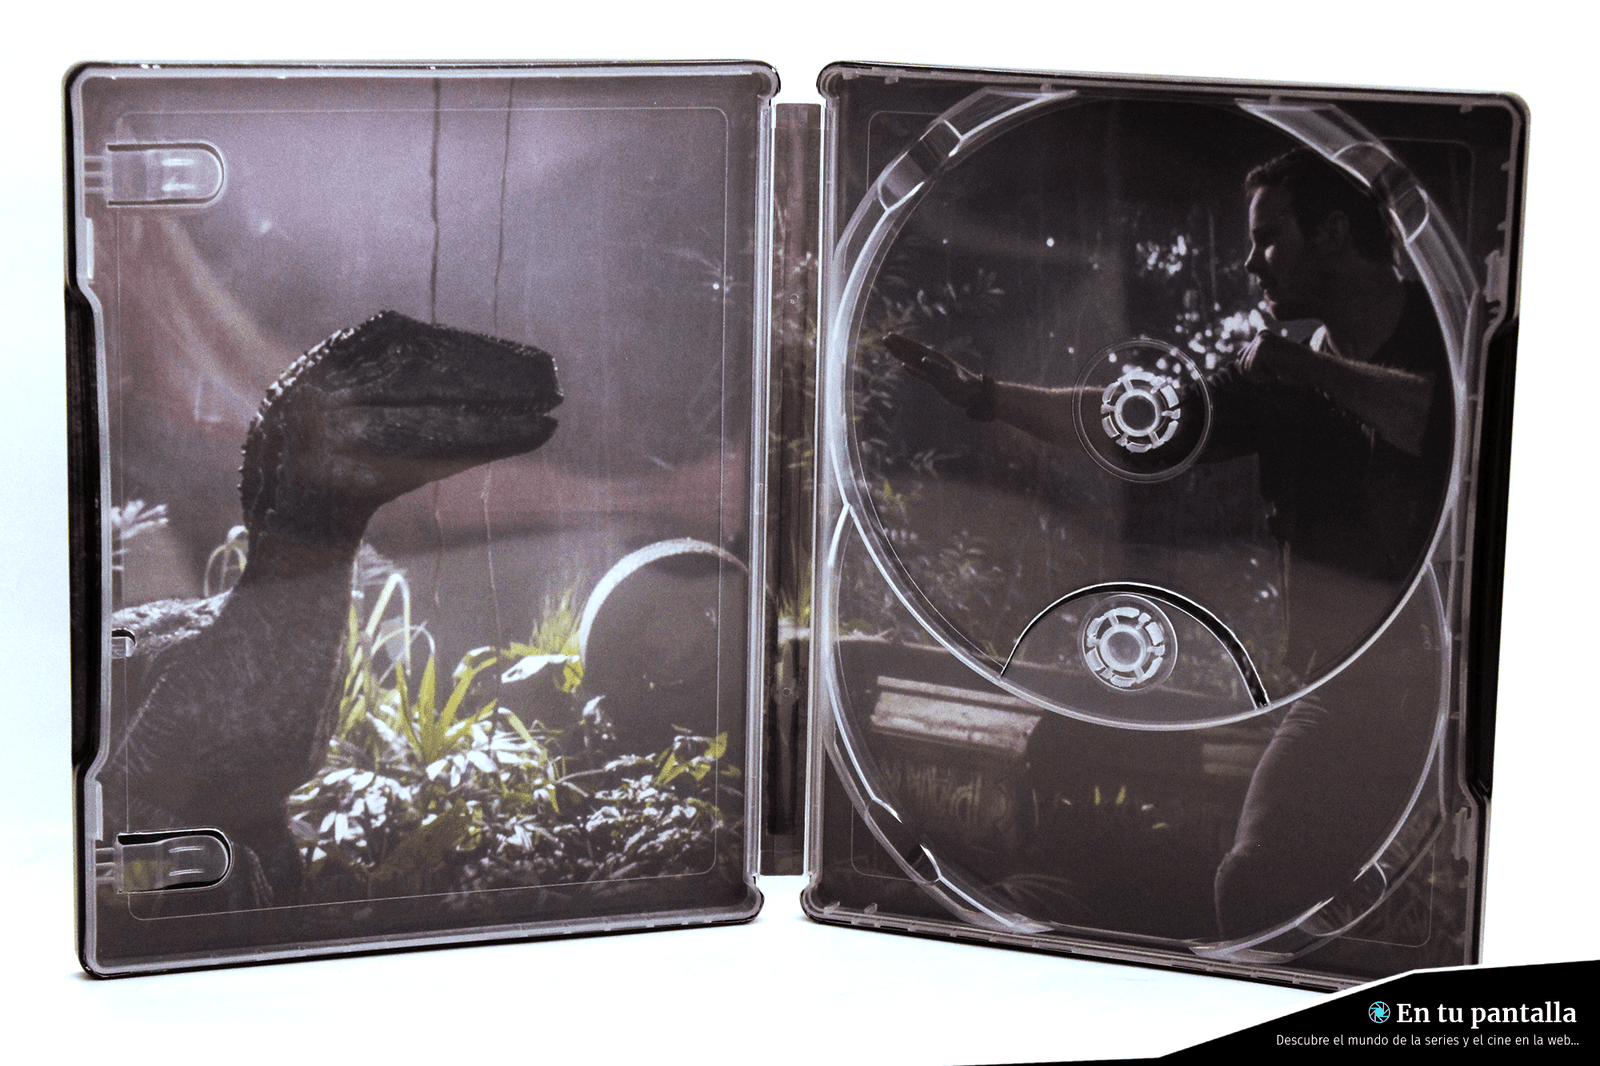 ‘Jurassic World: Fallen Kingdom’: Un vistazo a la edición steelbook 4K Ultra HD • En tu pantalla